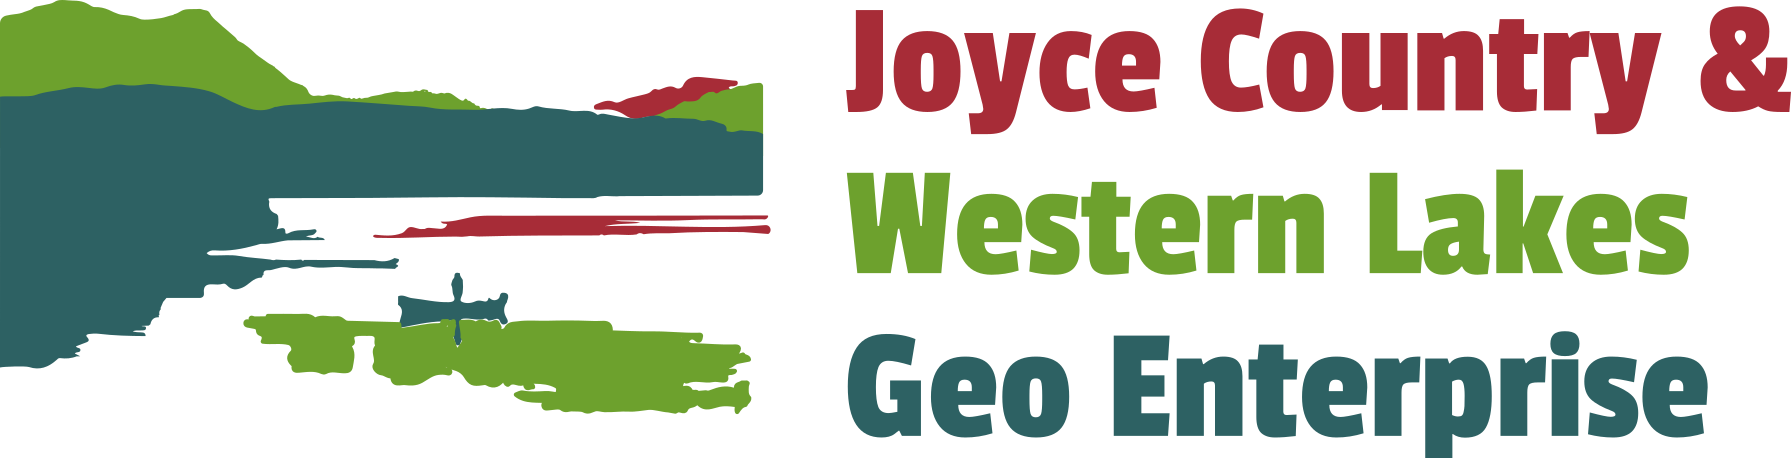 Joyce Country & Western Lakes GeoEnterprise